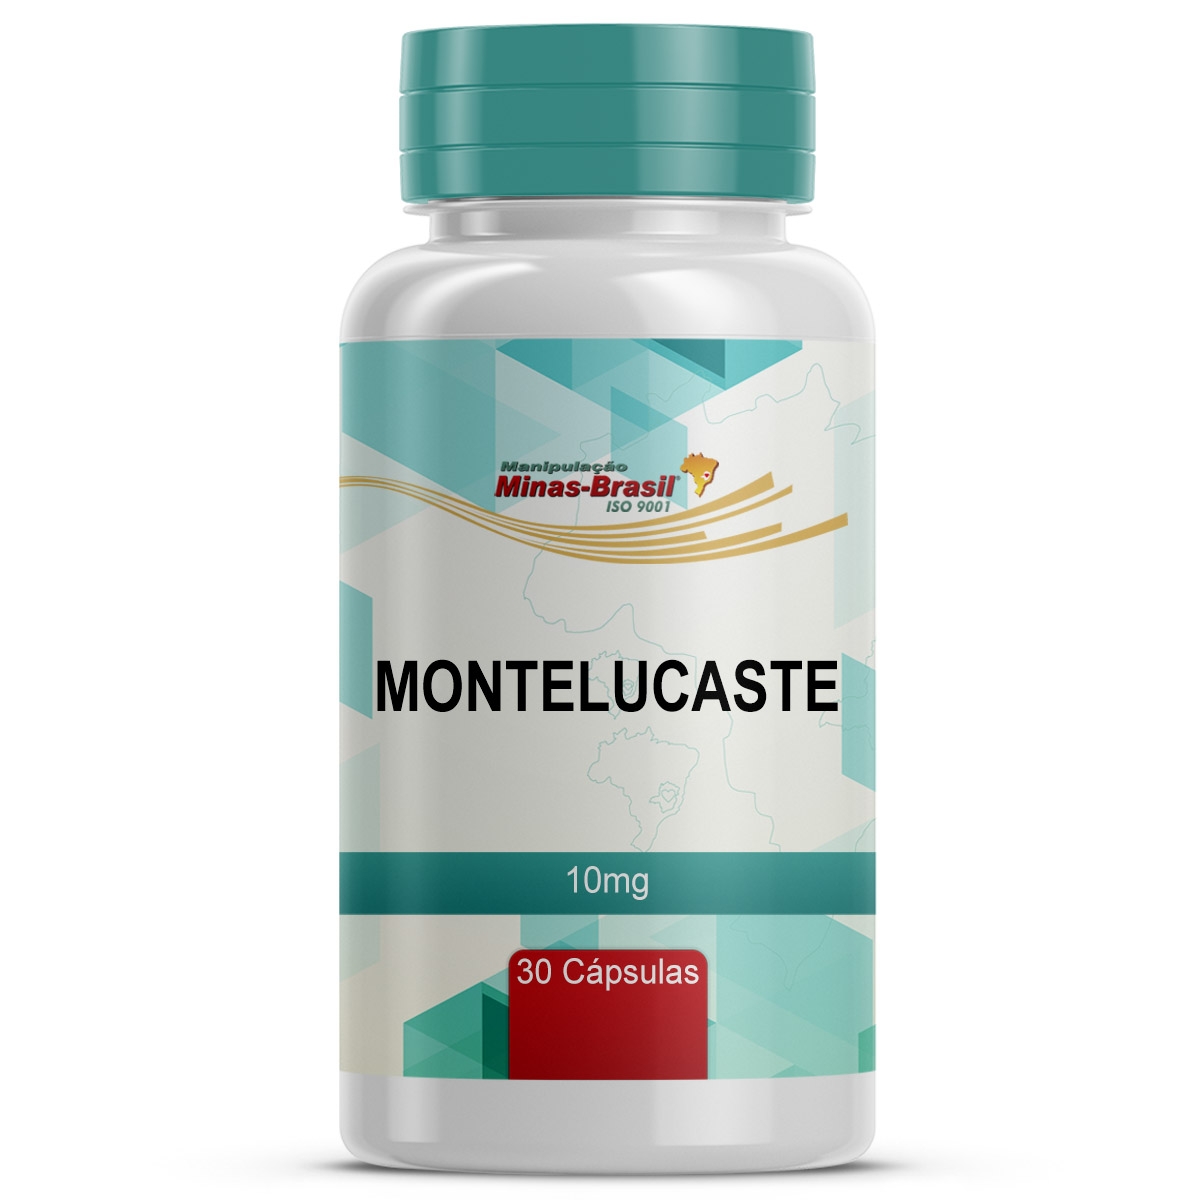 Montelucaste de Sódio Biosintética - Aché 10mg, caixa com 30